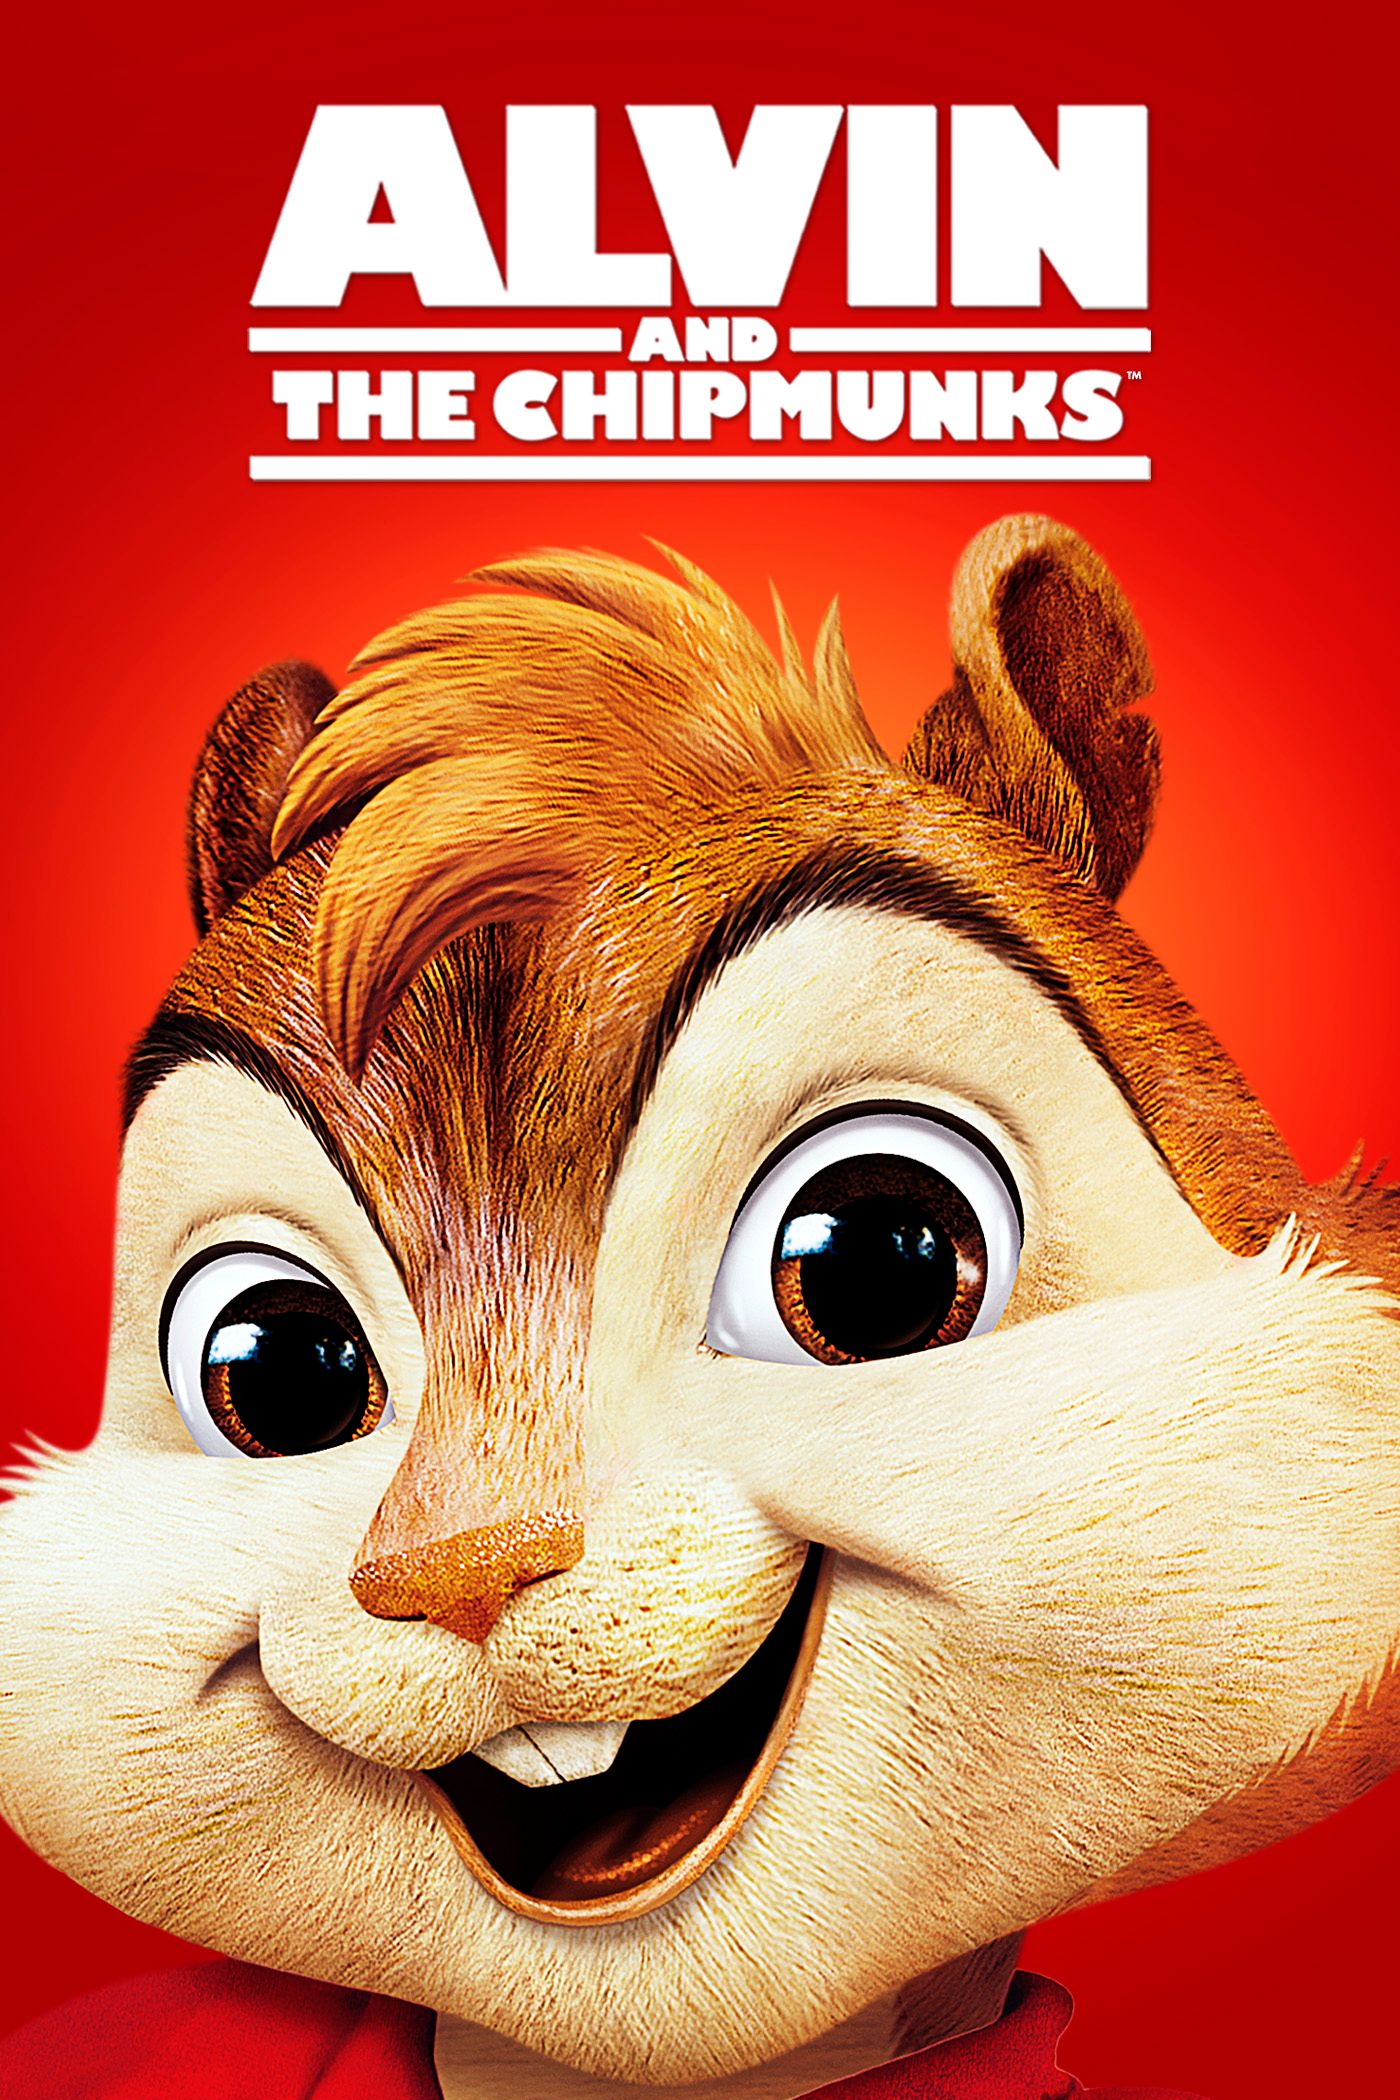 blerta memeti recommends Alvin Chipmunks Full Movie